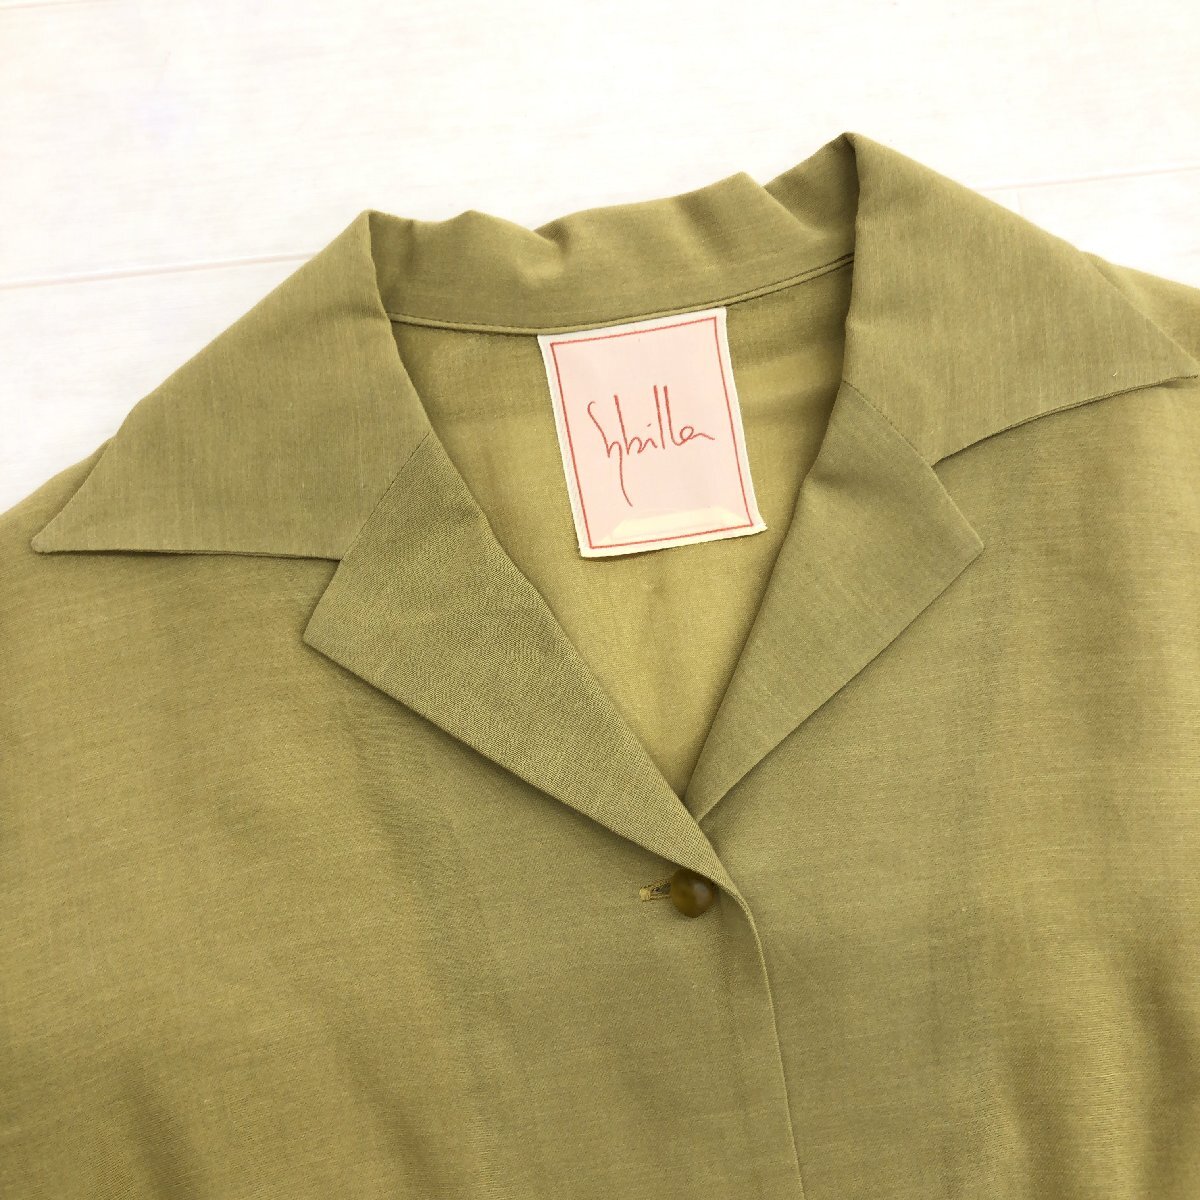  товар в хорошем состоянии  Sybilla ... ...100%  одним лотом   ансамбль   костюм  M ... цвет   light  зеленый  пиджак   сделано в Японии   весна   лето  для   внутри страны  подлинный товар    для женщин  